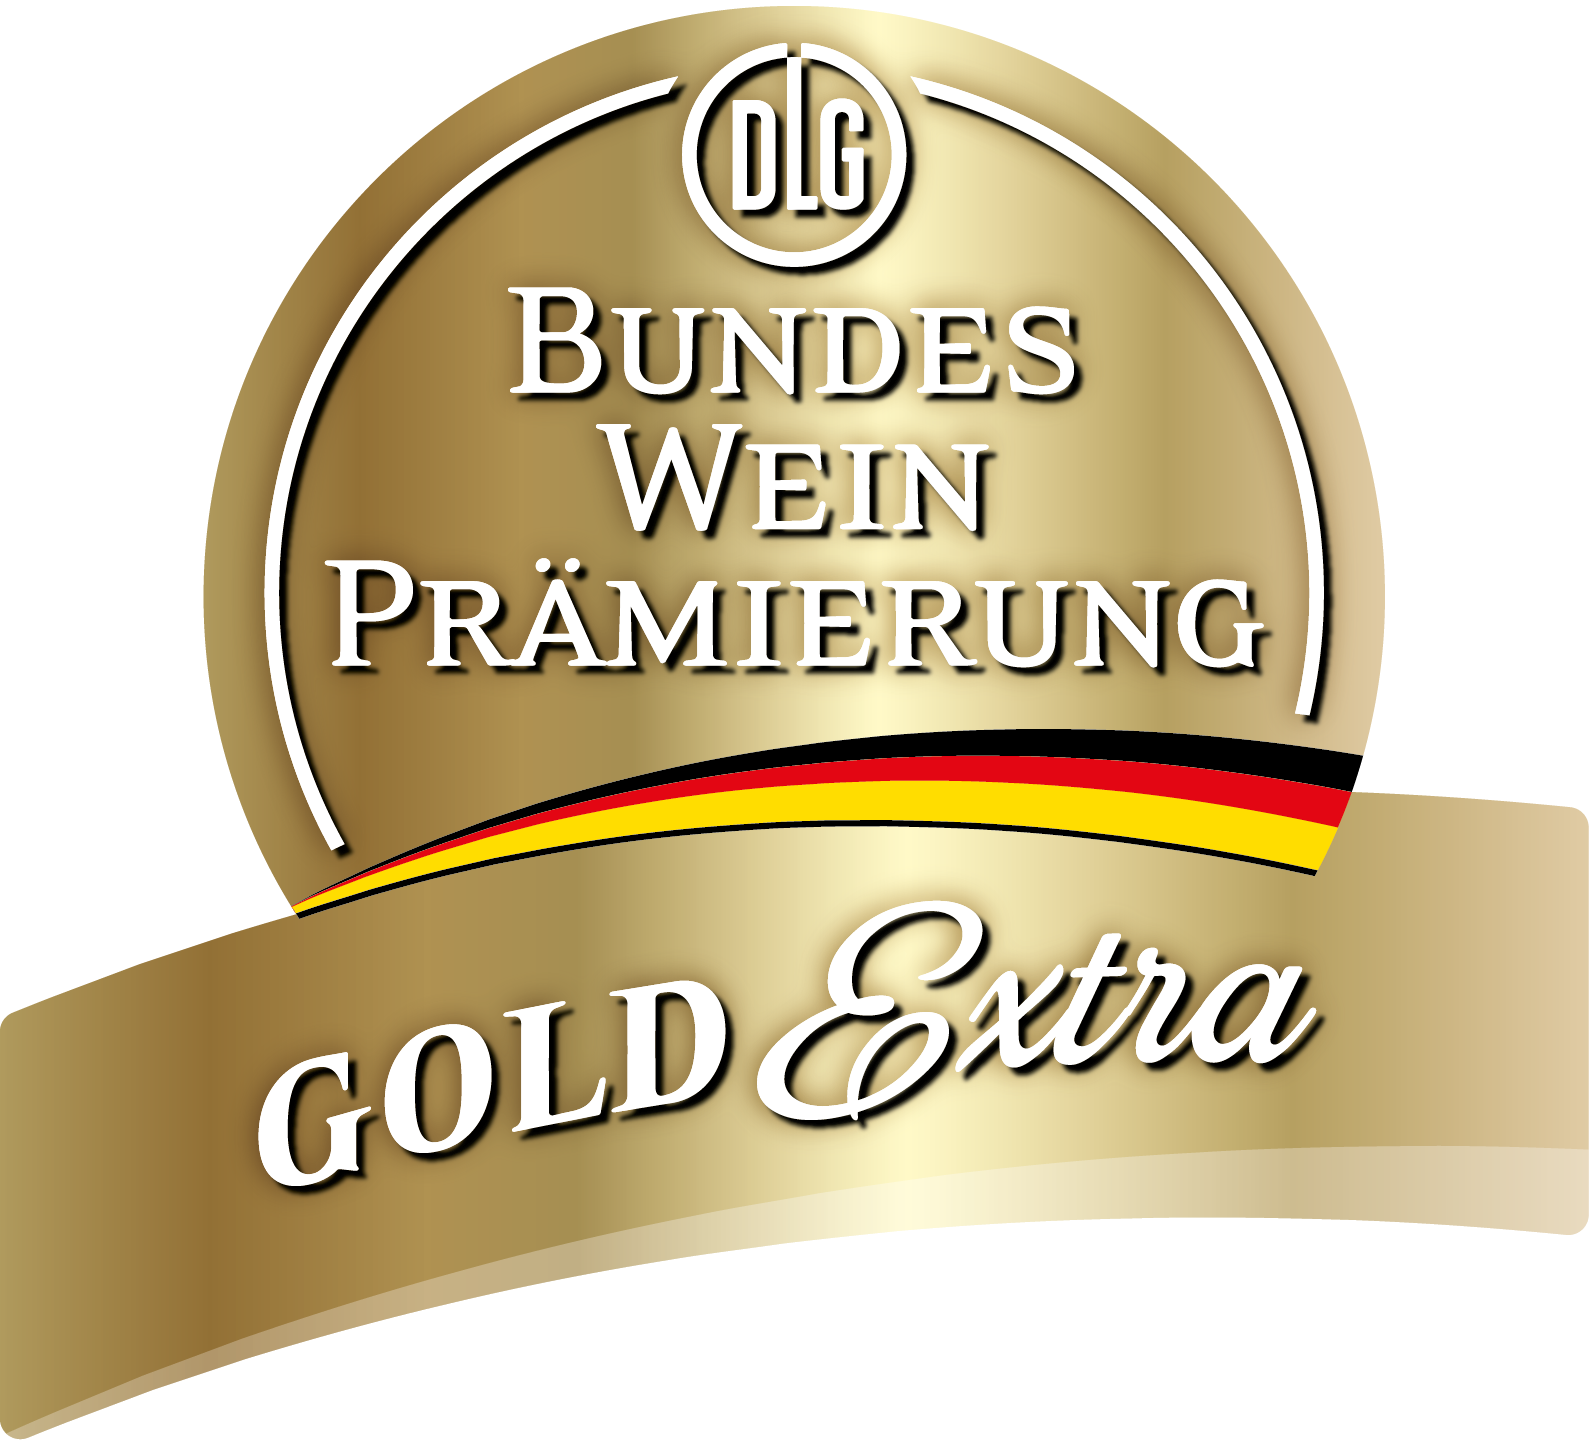 Das "DLG Gold Extra"-Siegel der Bundesweinprämierung